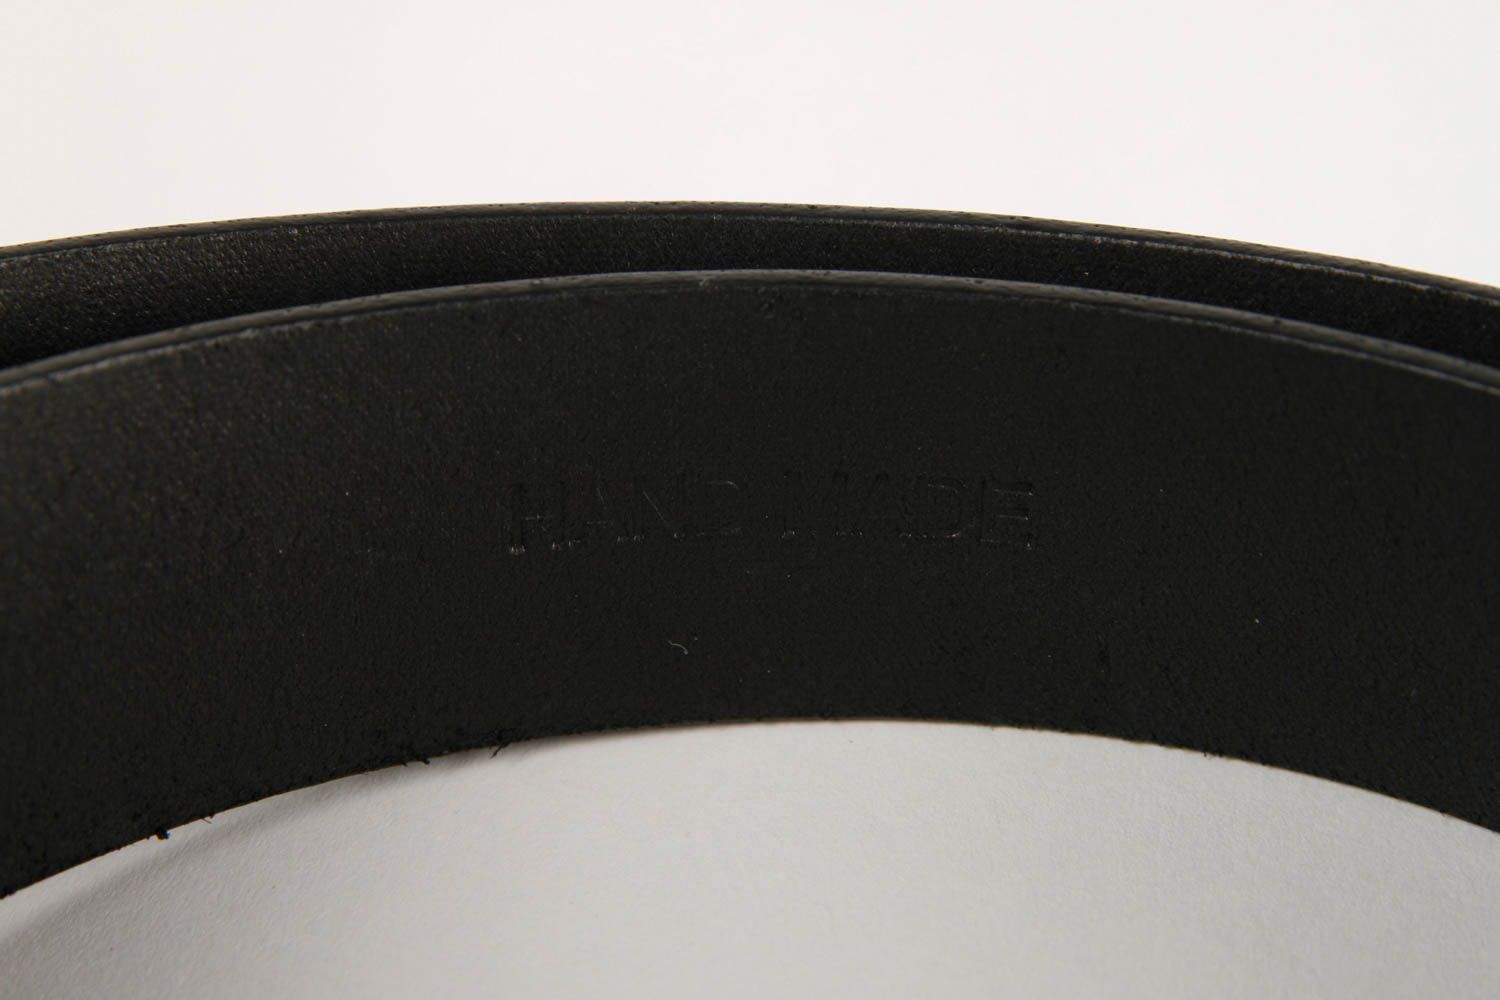 Handmade leather belt for men designer accessory black belt for men gift ideas photo 5